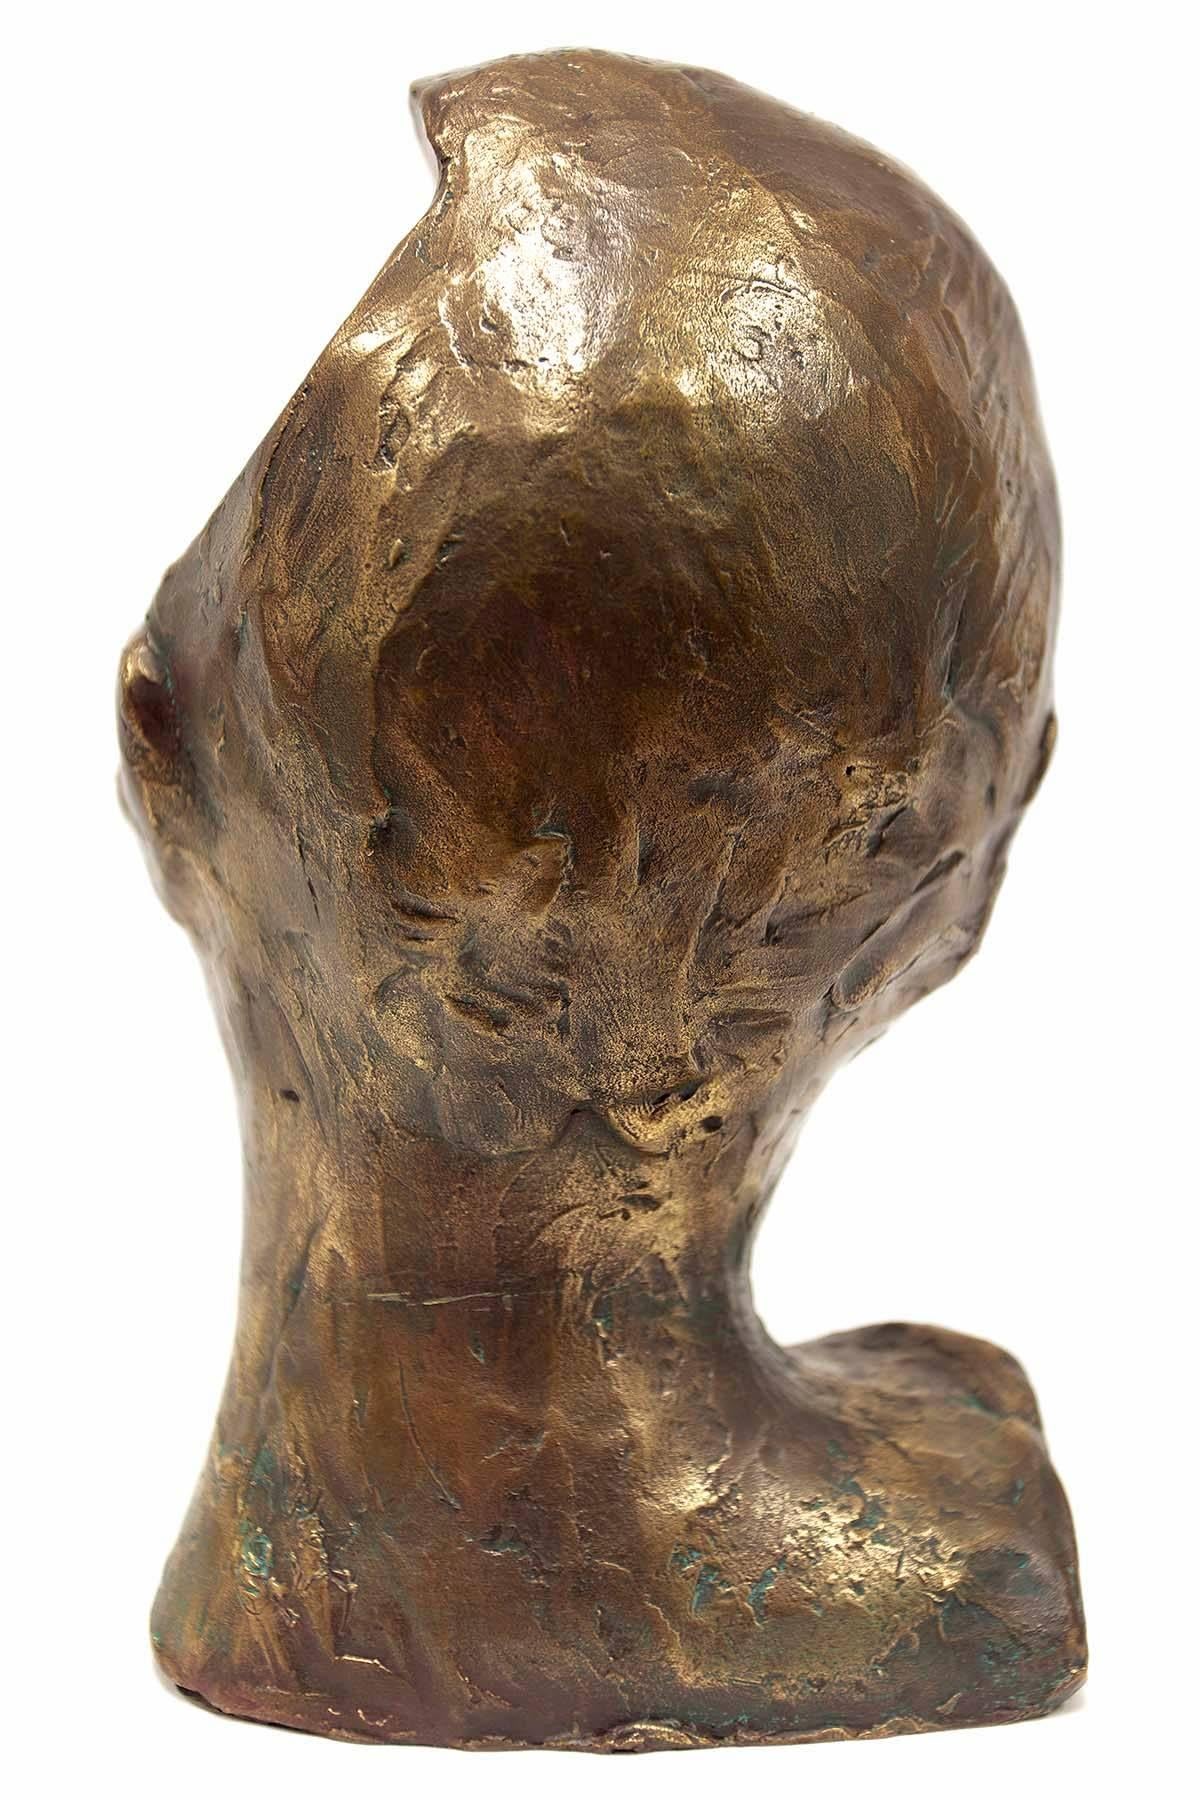 Cette sculpture en bronze de Philip Pavia fait partie de sa série 